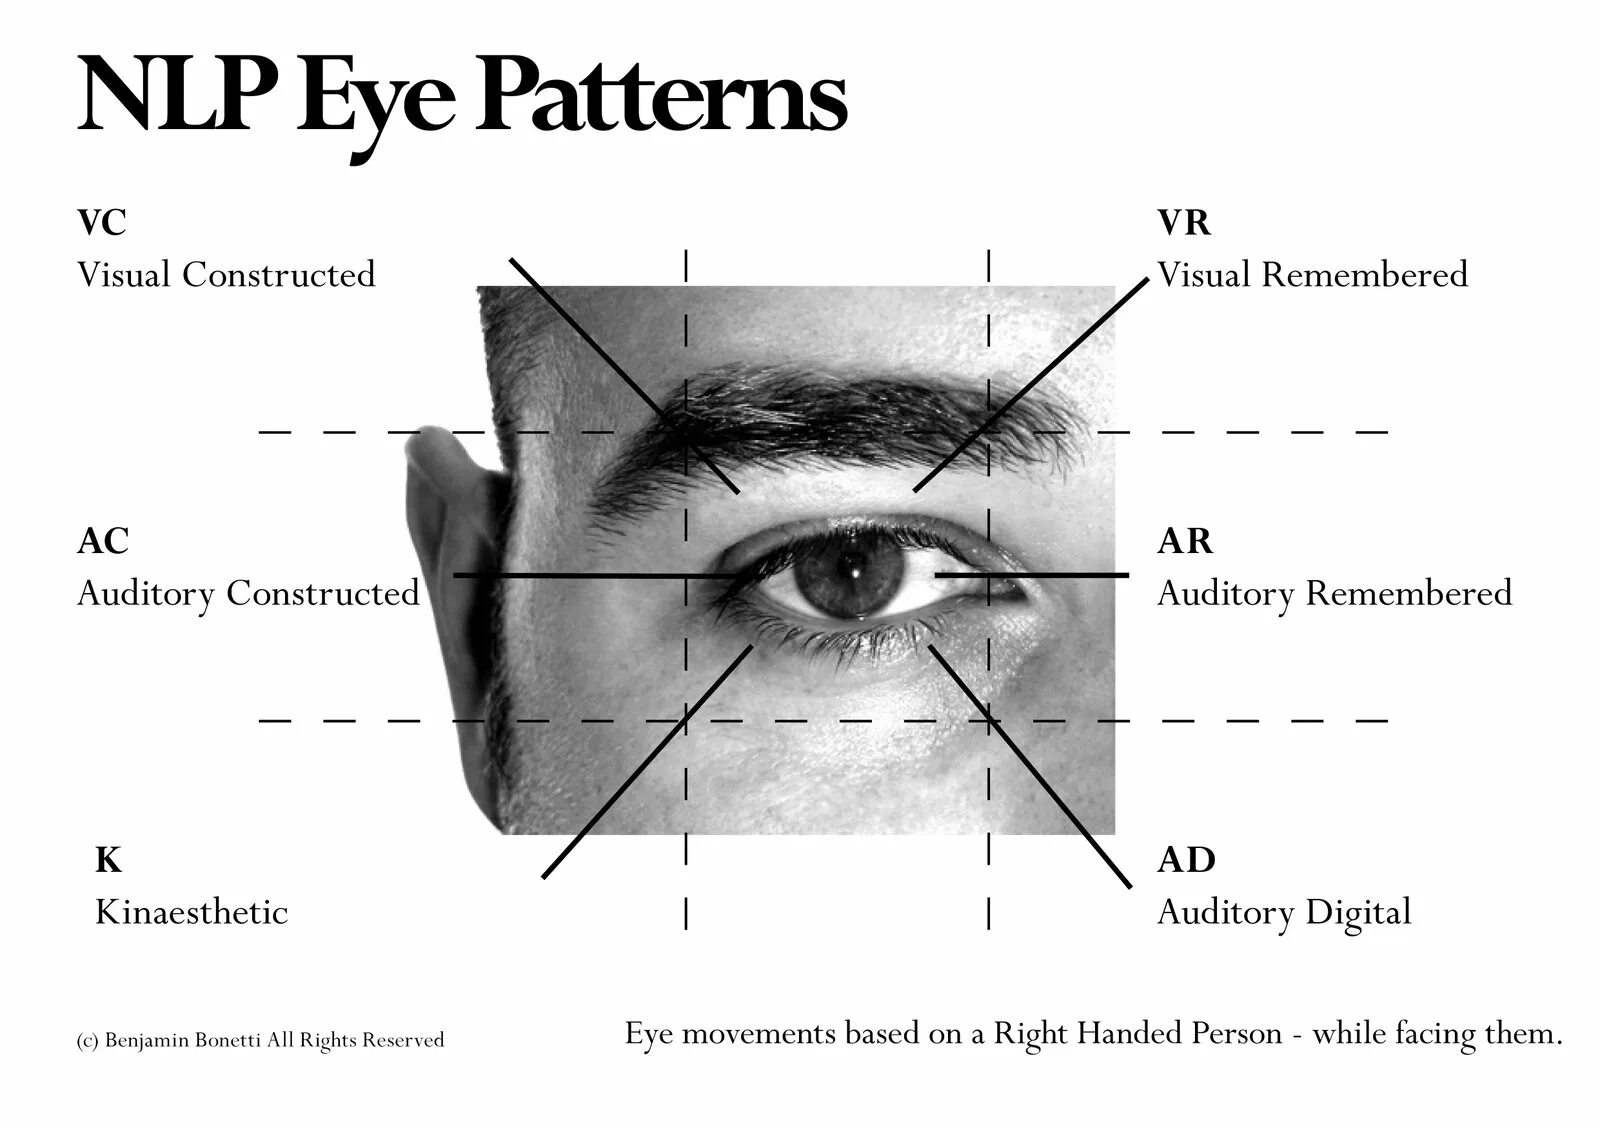 Two eyes перевод на русский. Паттерны движения глаз. Схема движения глаз. NLP глаза. Интерпретация движения глаз.